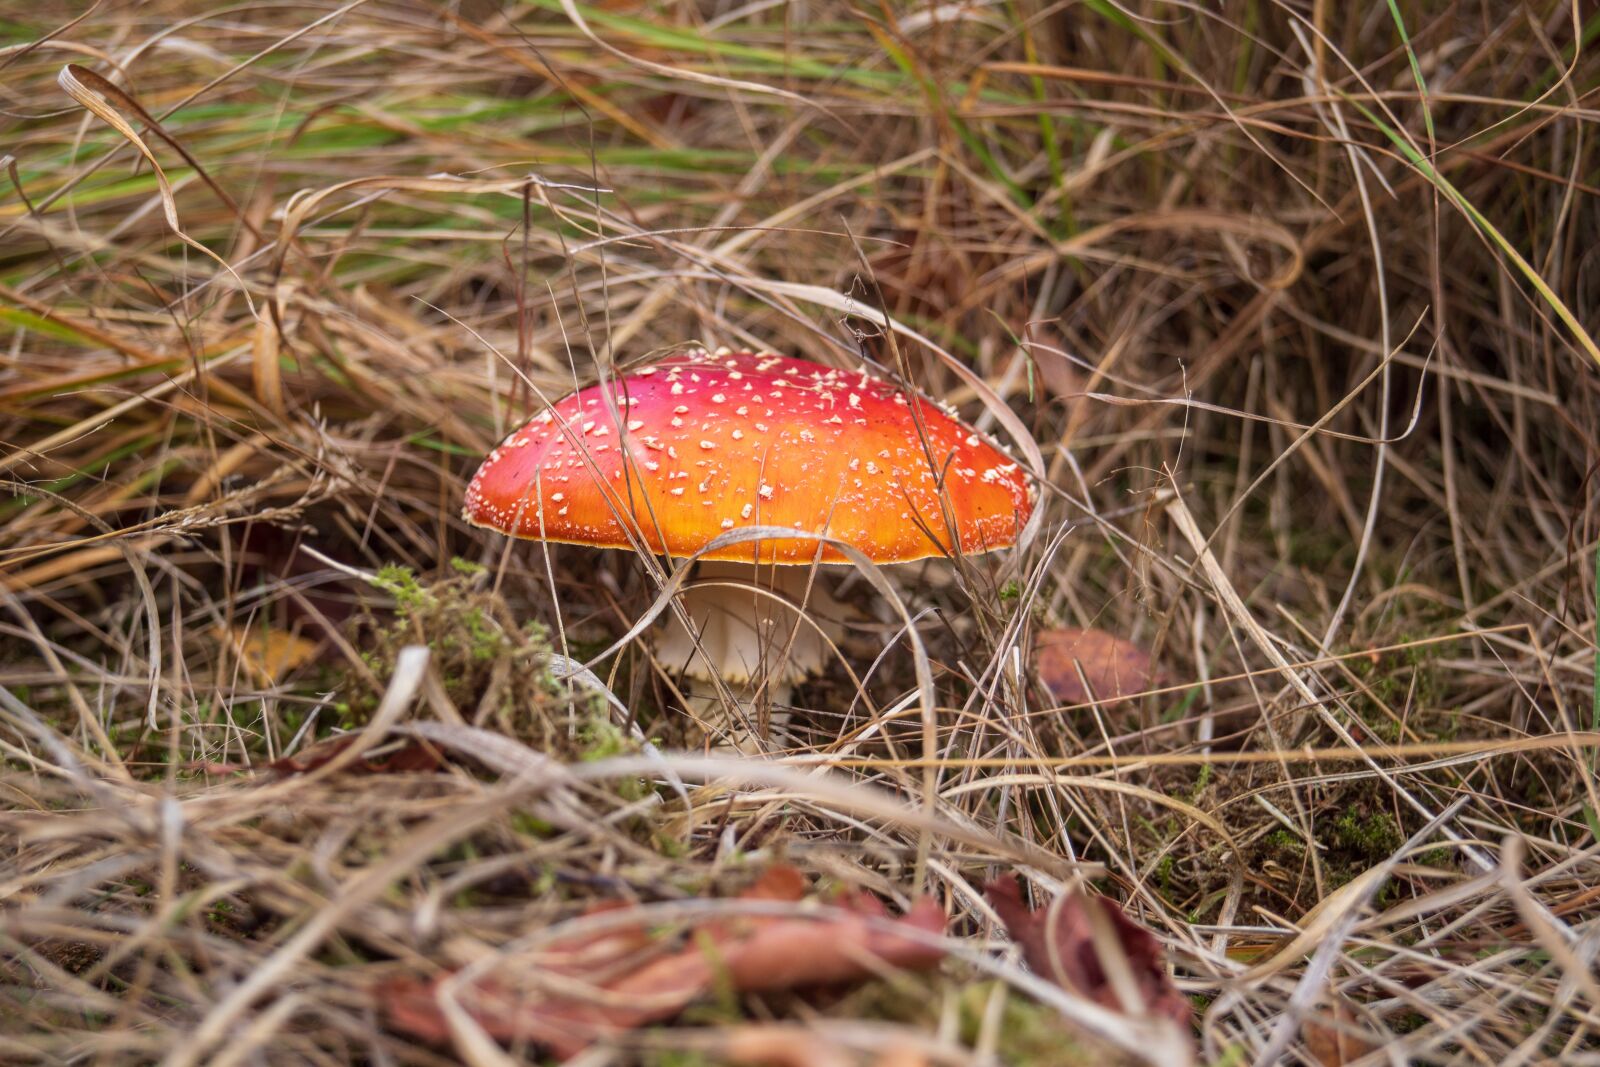 Sony SLT-A68 sample photo. Mushroom, forest, autumn photography